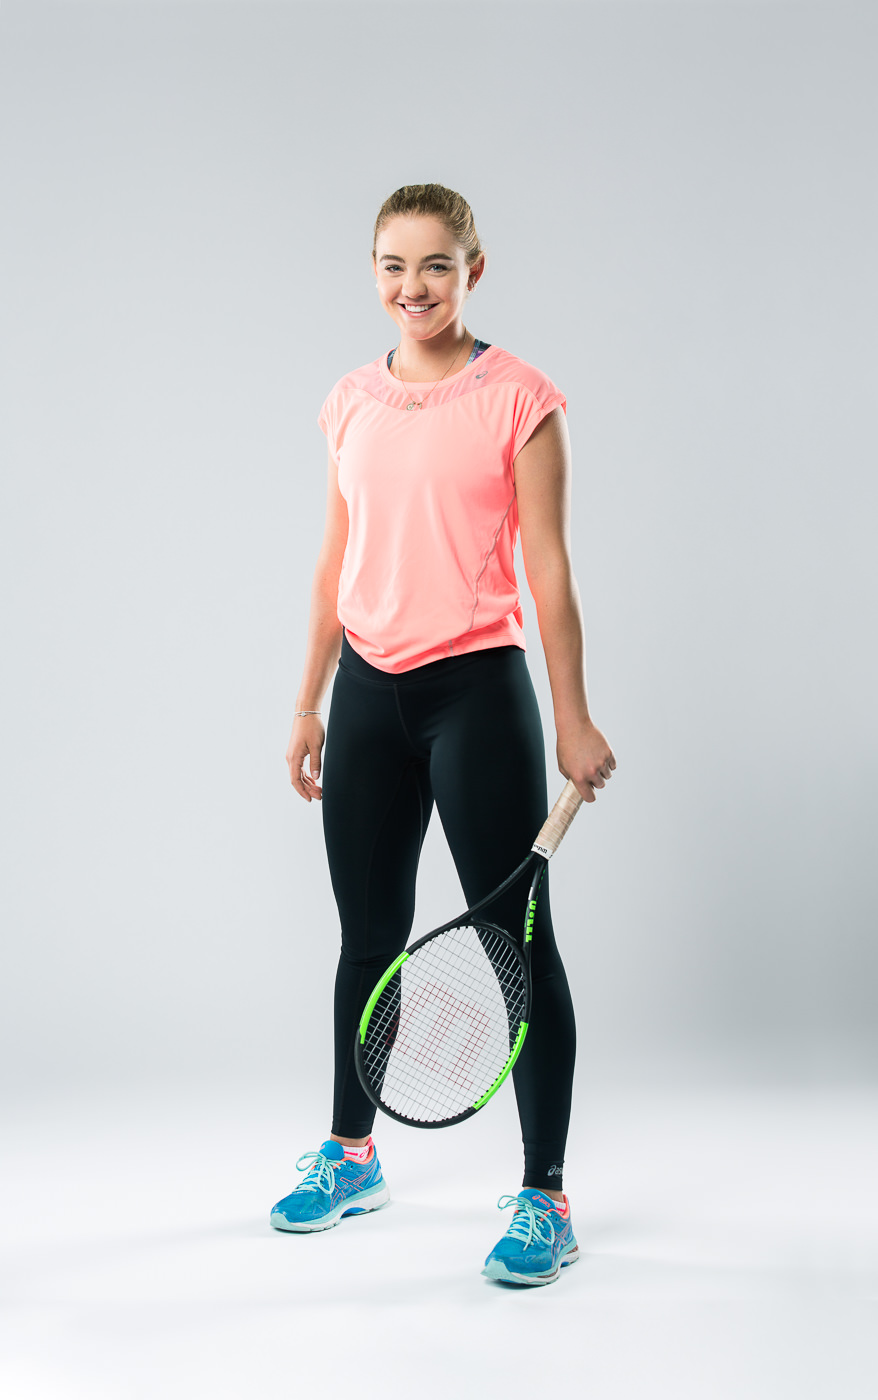 Portrait joueuse équipe Tennis Canada Charlotte Robillard Milette